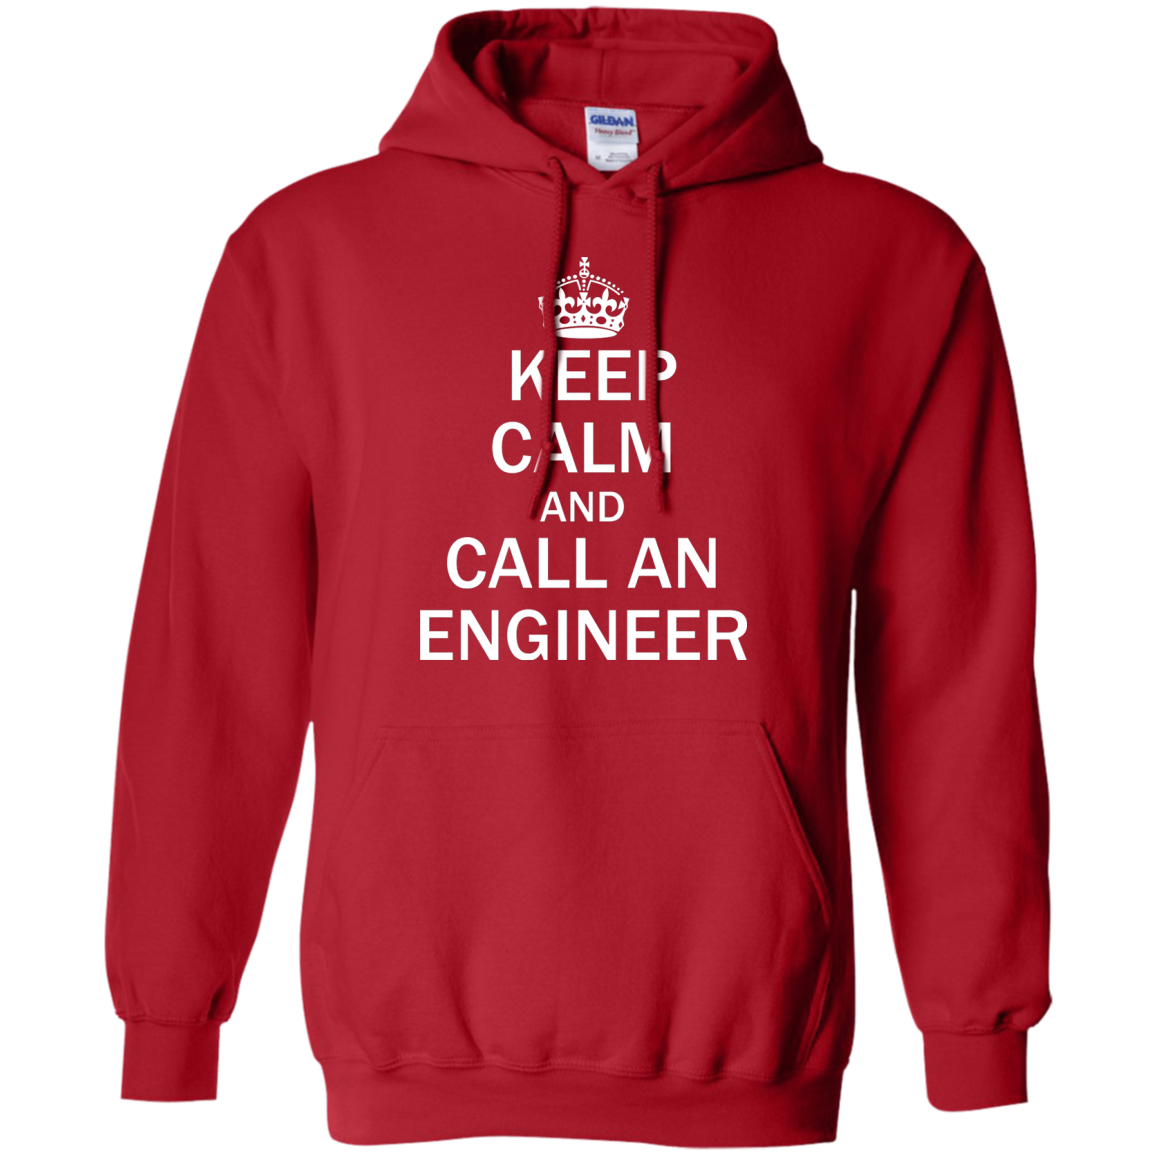 Mantenga la calma y llame a un ingeniero